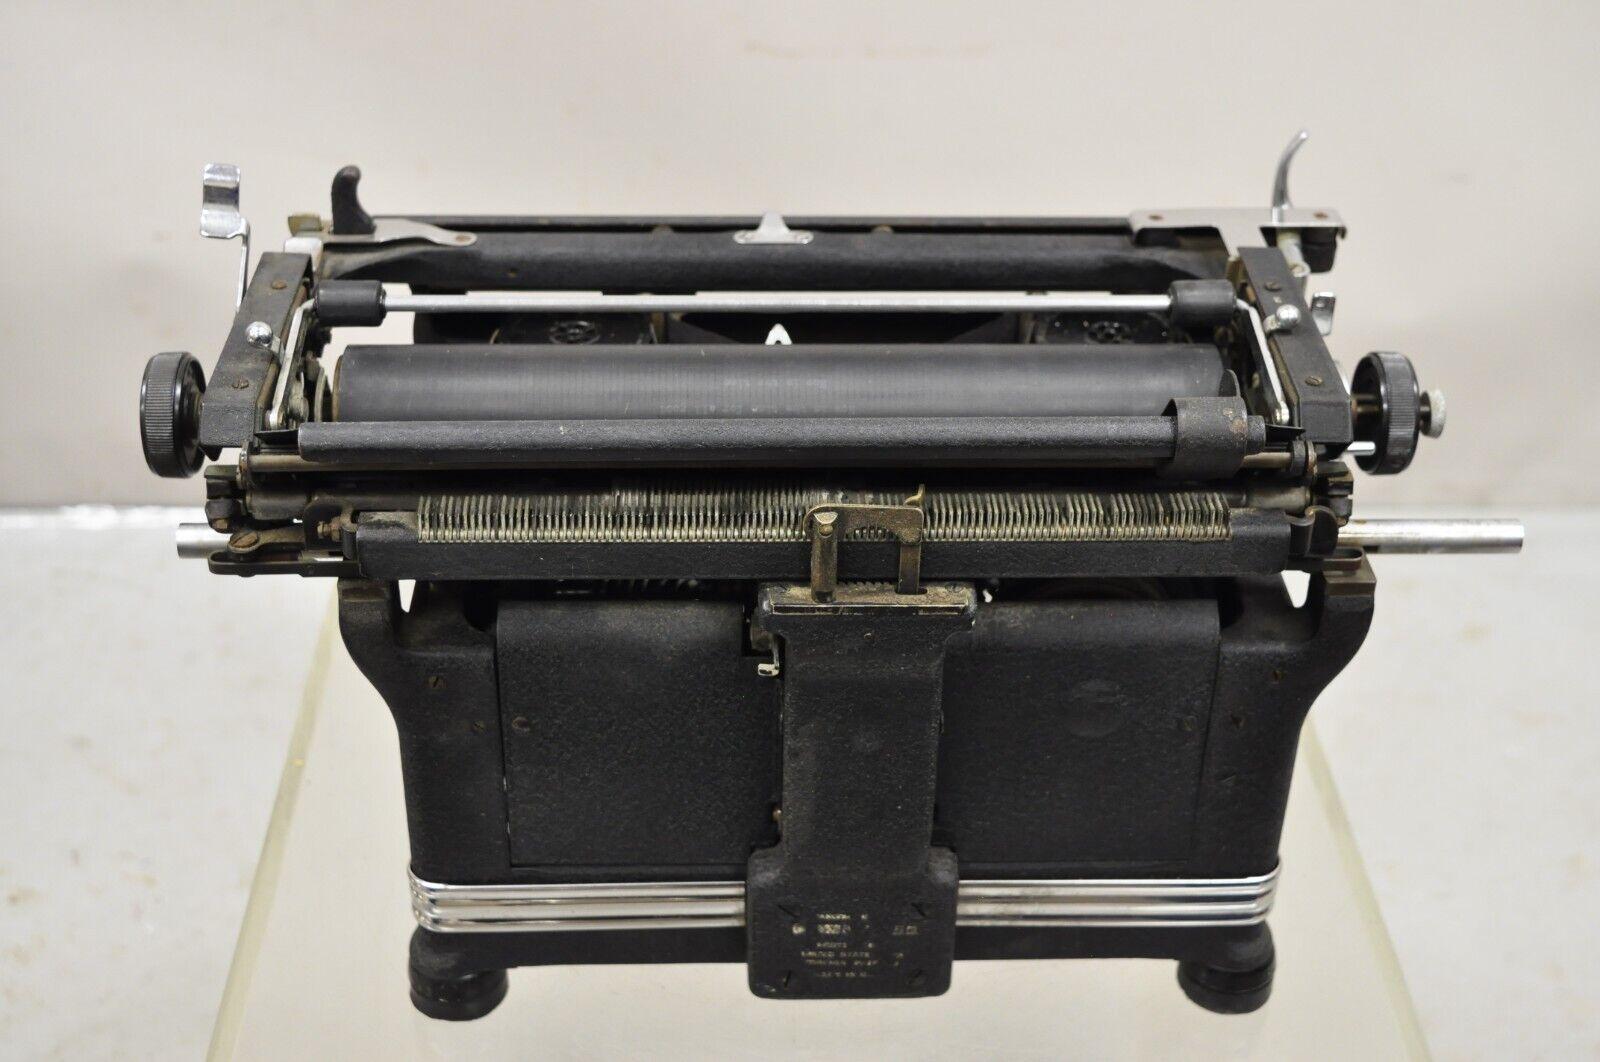 Metal Antique 1940s Underwood Manual Typewriter